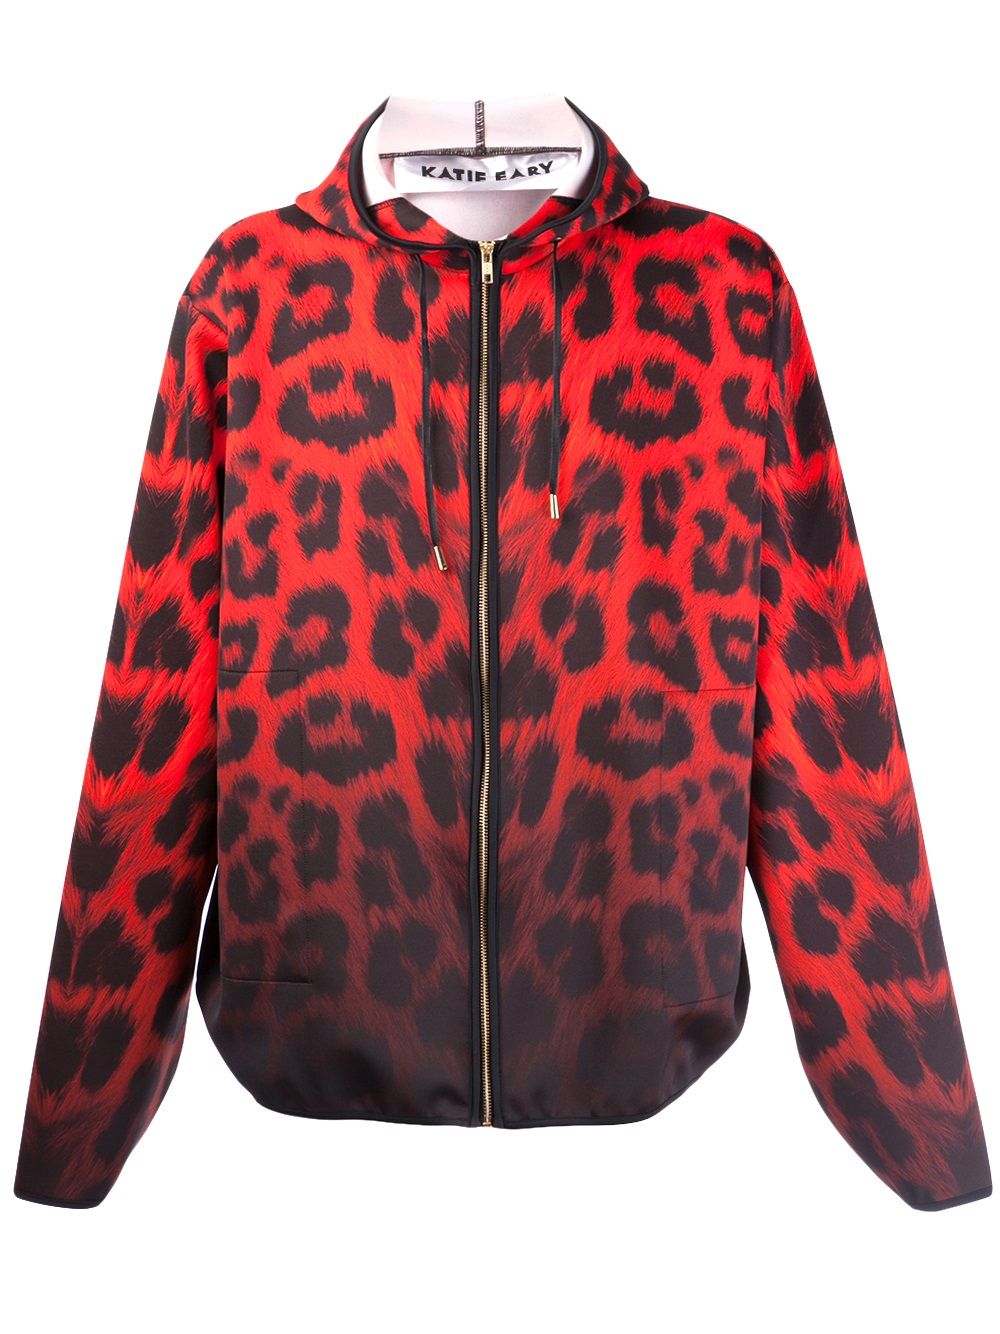 Katie Eary Leopard Print Hoodie in Red for Men | Lyst